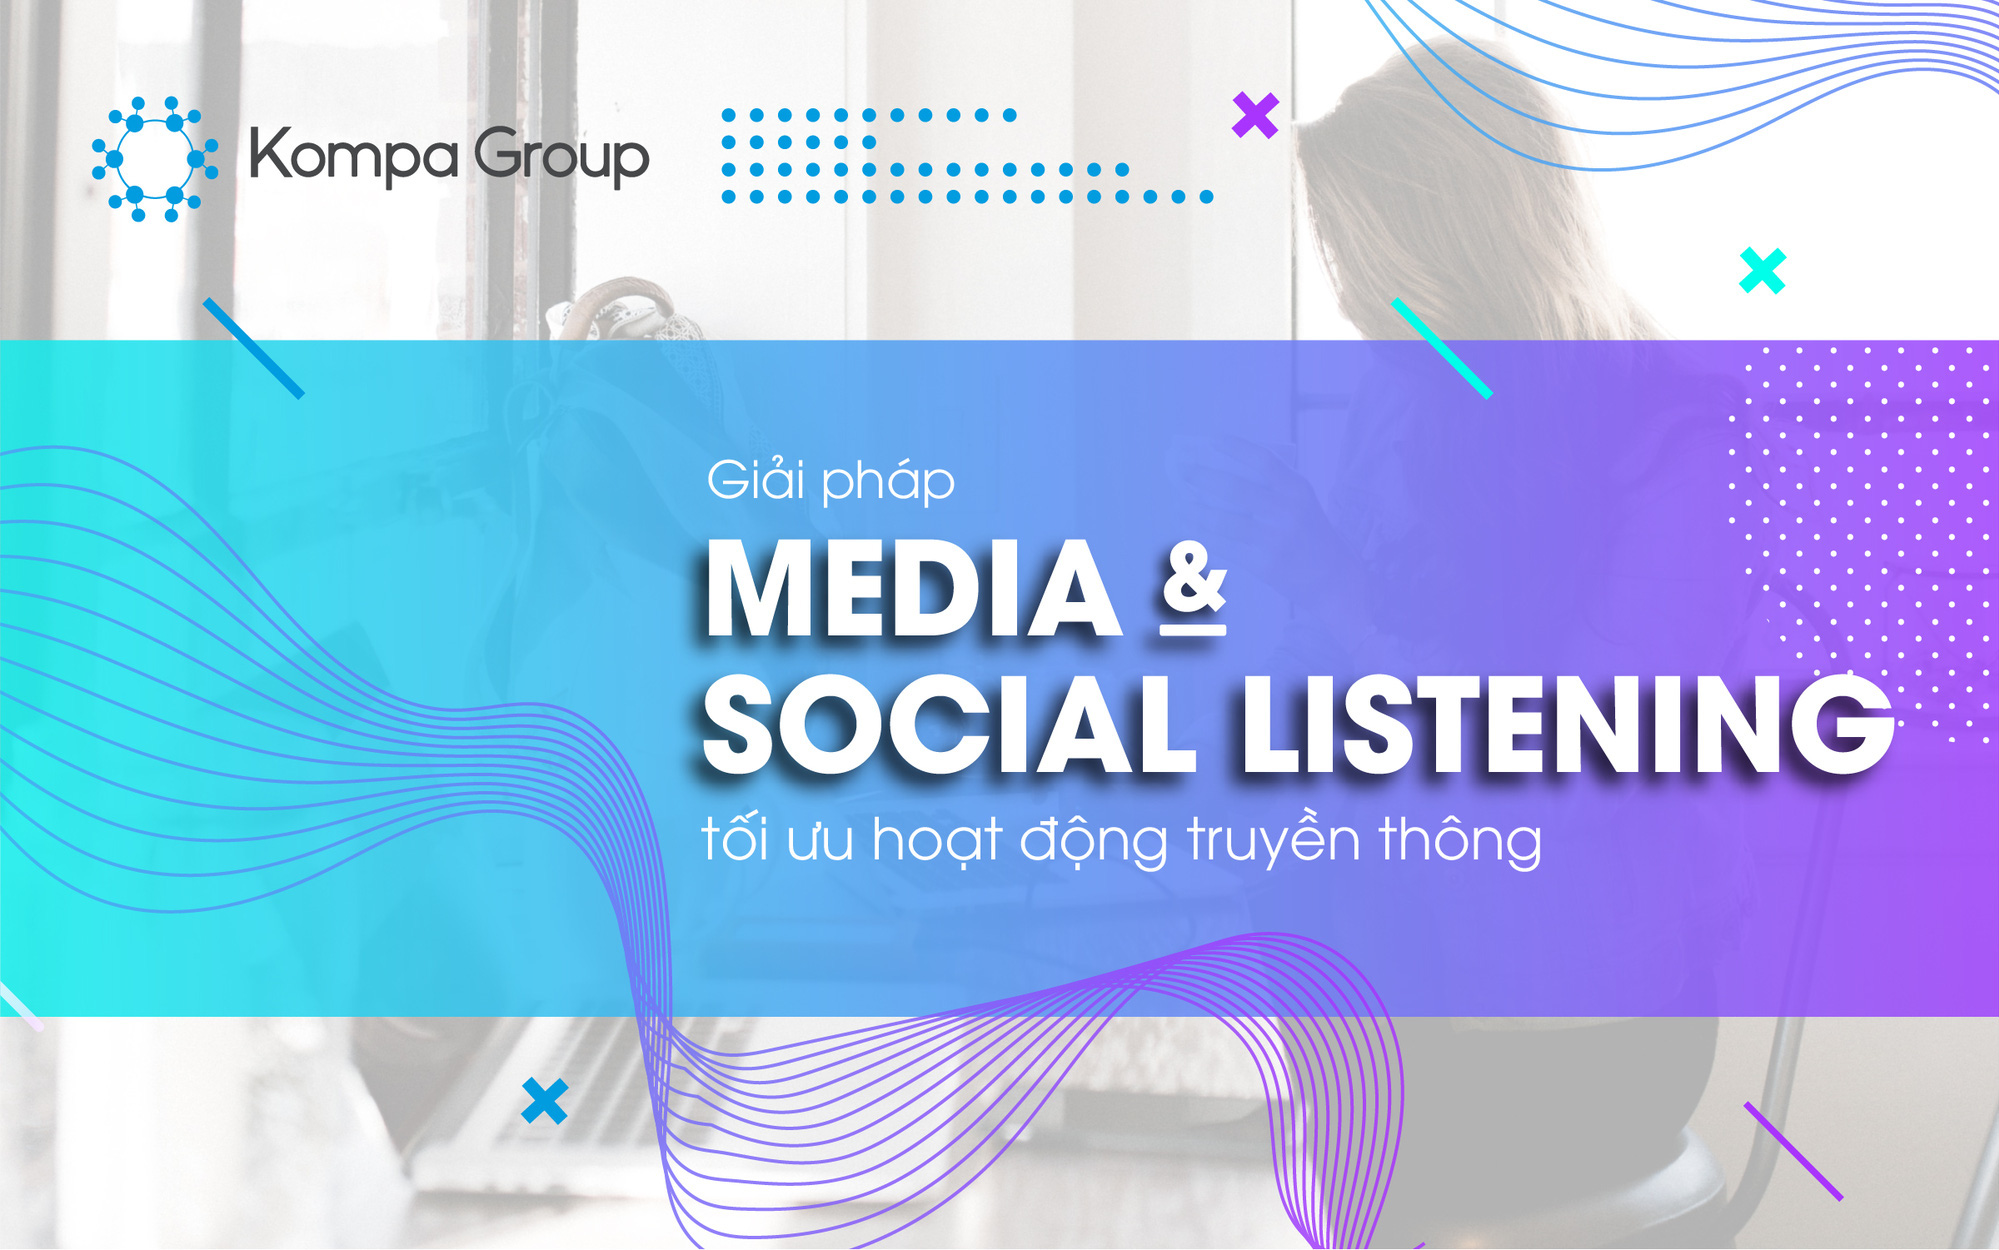 Giải pháp "Media & Social Listening" của Kompa Group: Tối ưu hóa chiến lược Truyền thông và Marketing